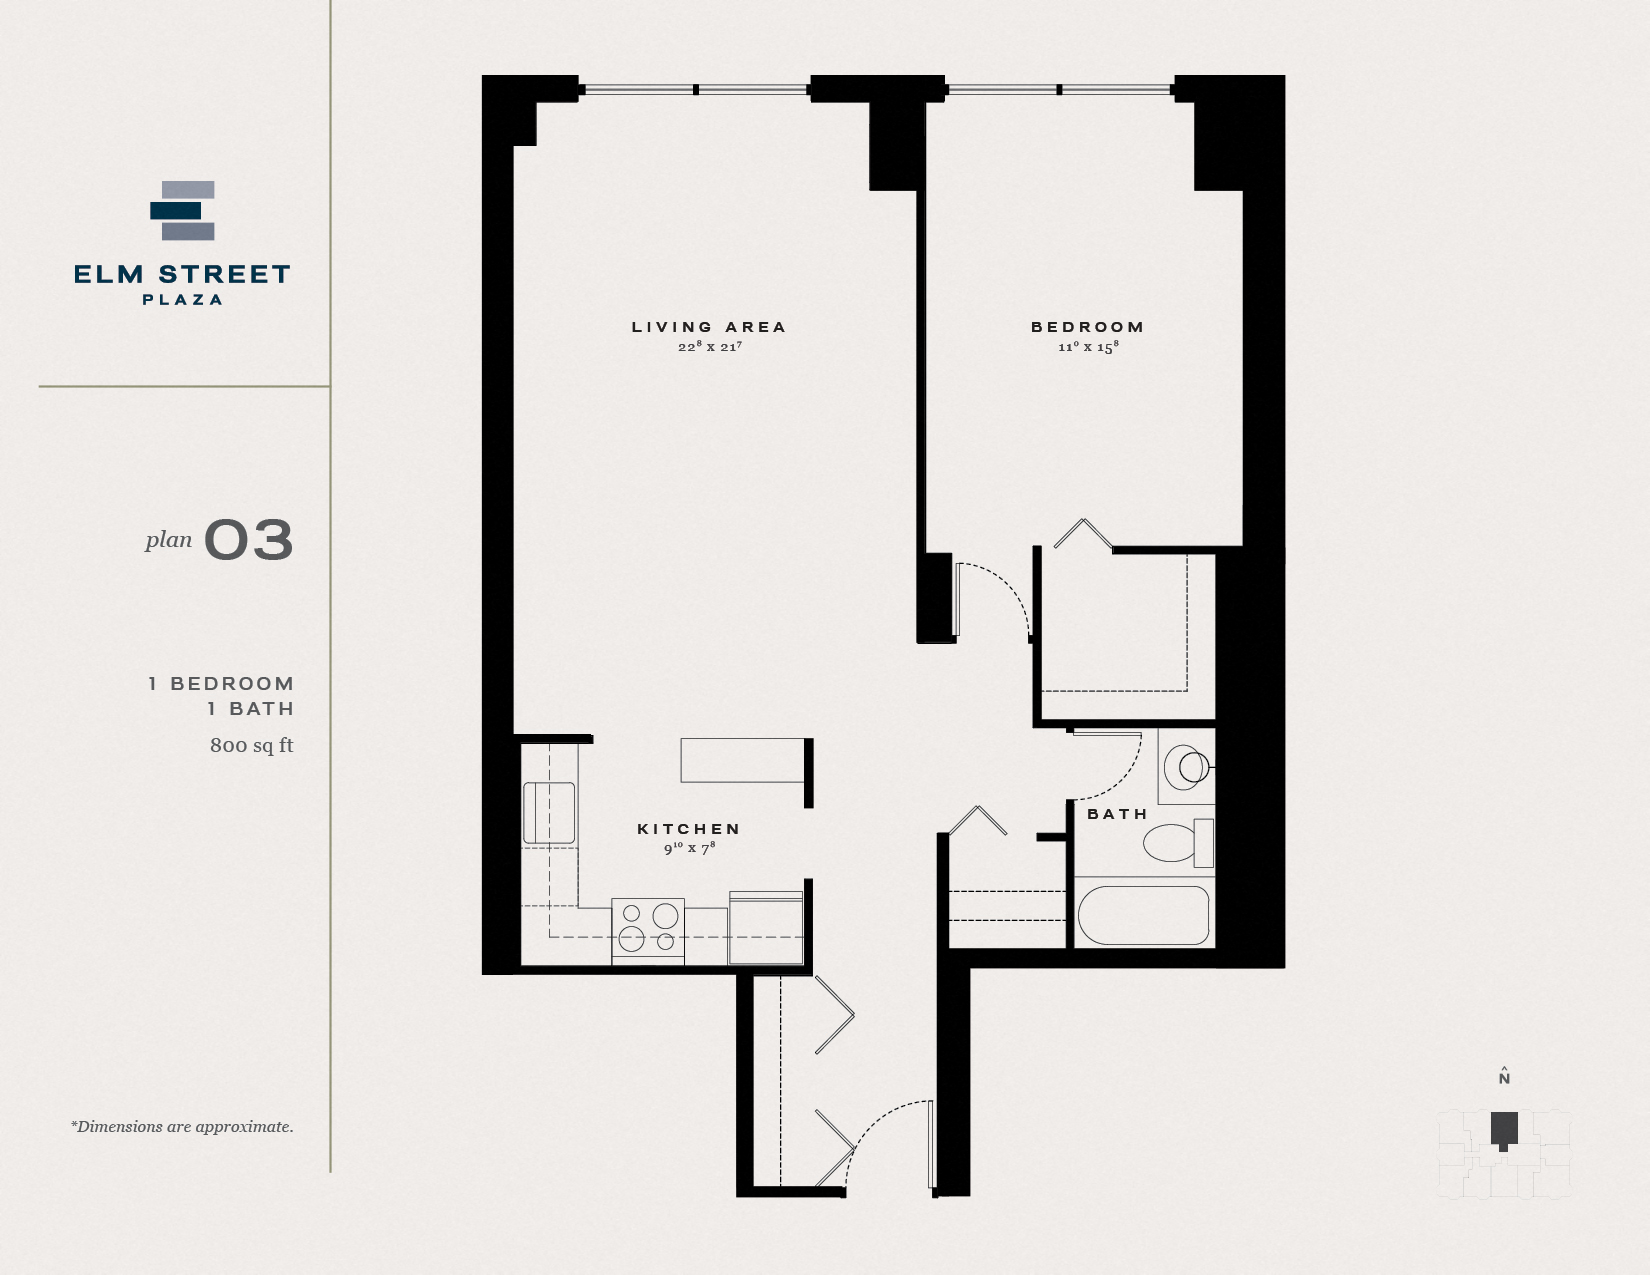 Studio, 1 & 2 Bedroom Gold Coast Apartments for Rent Elm